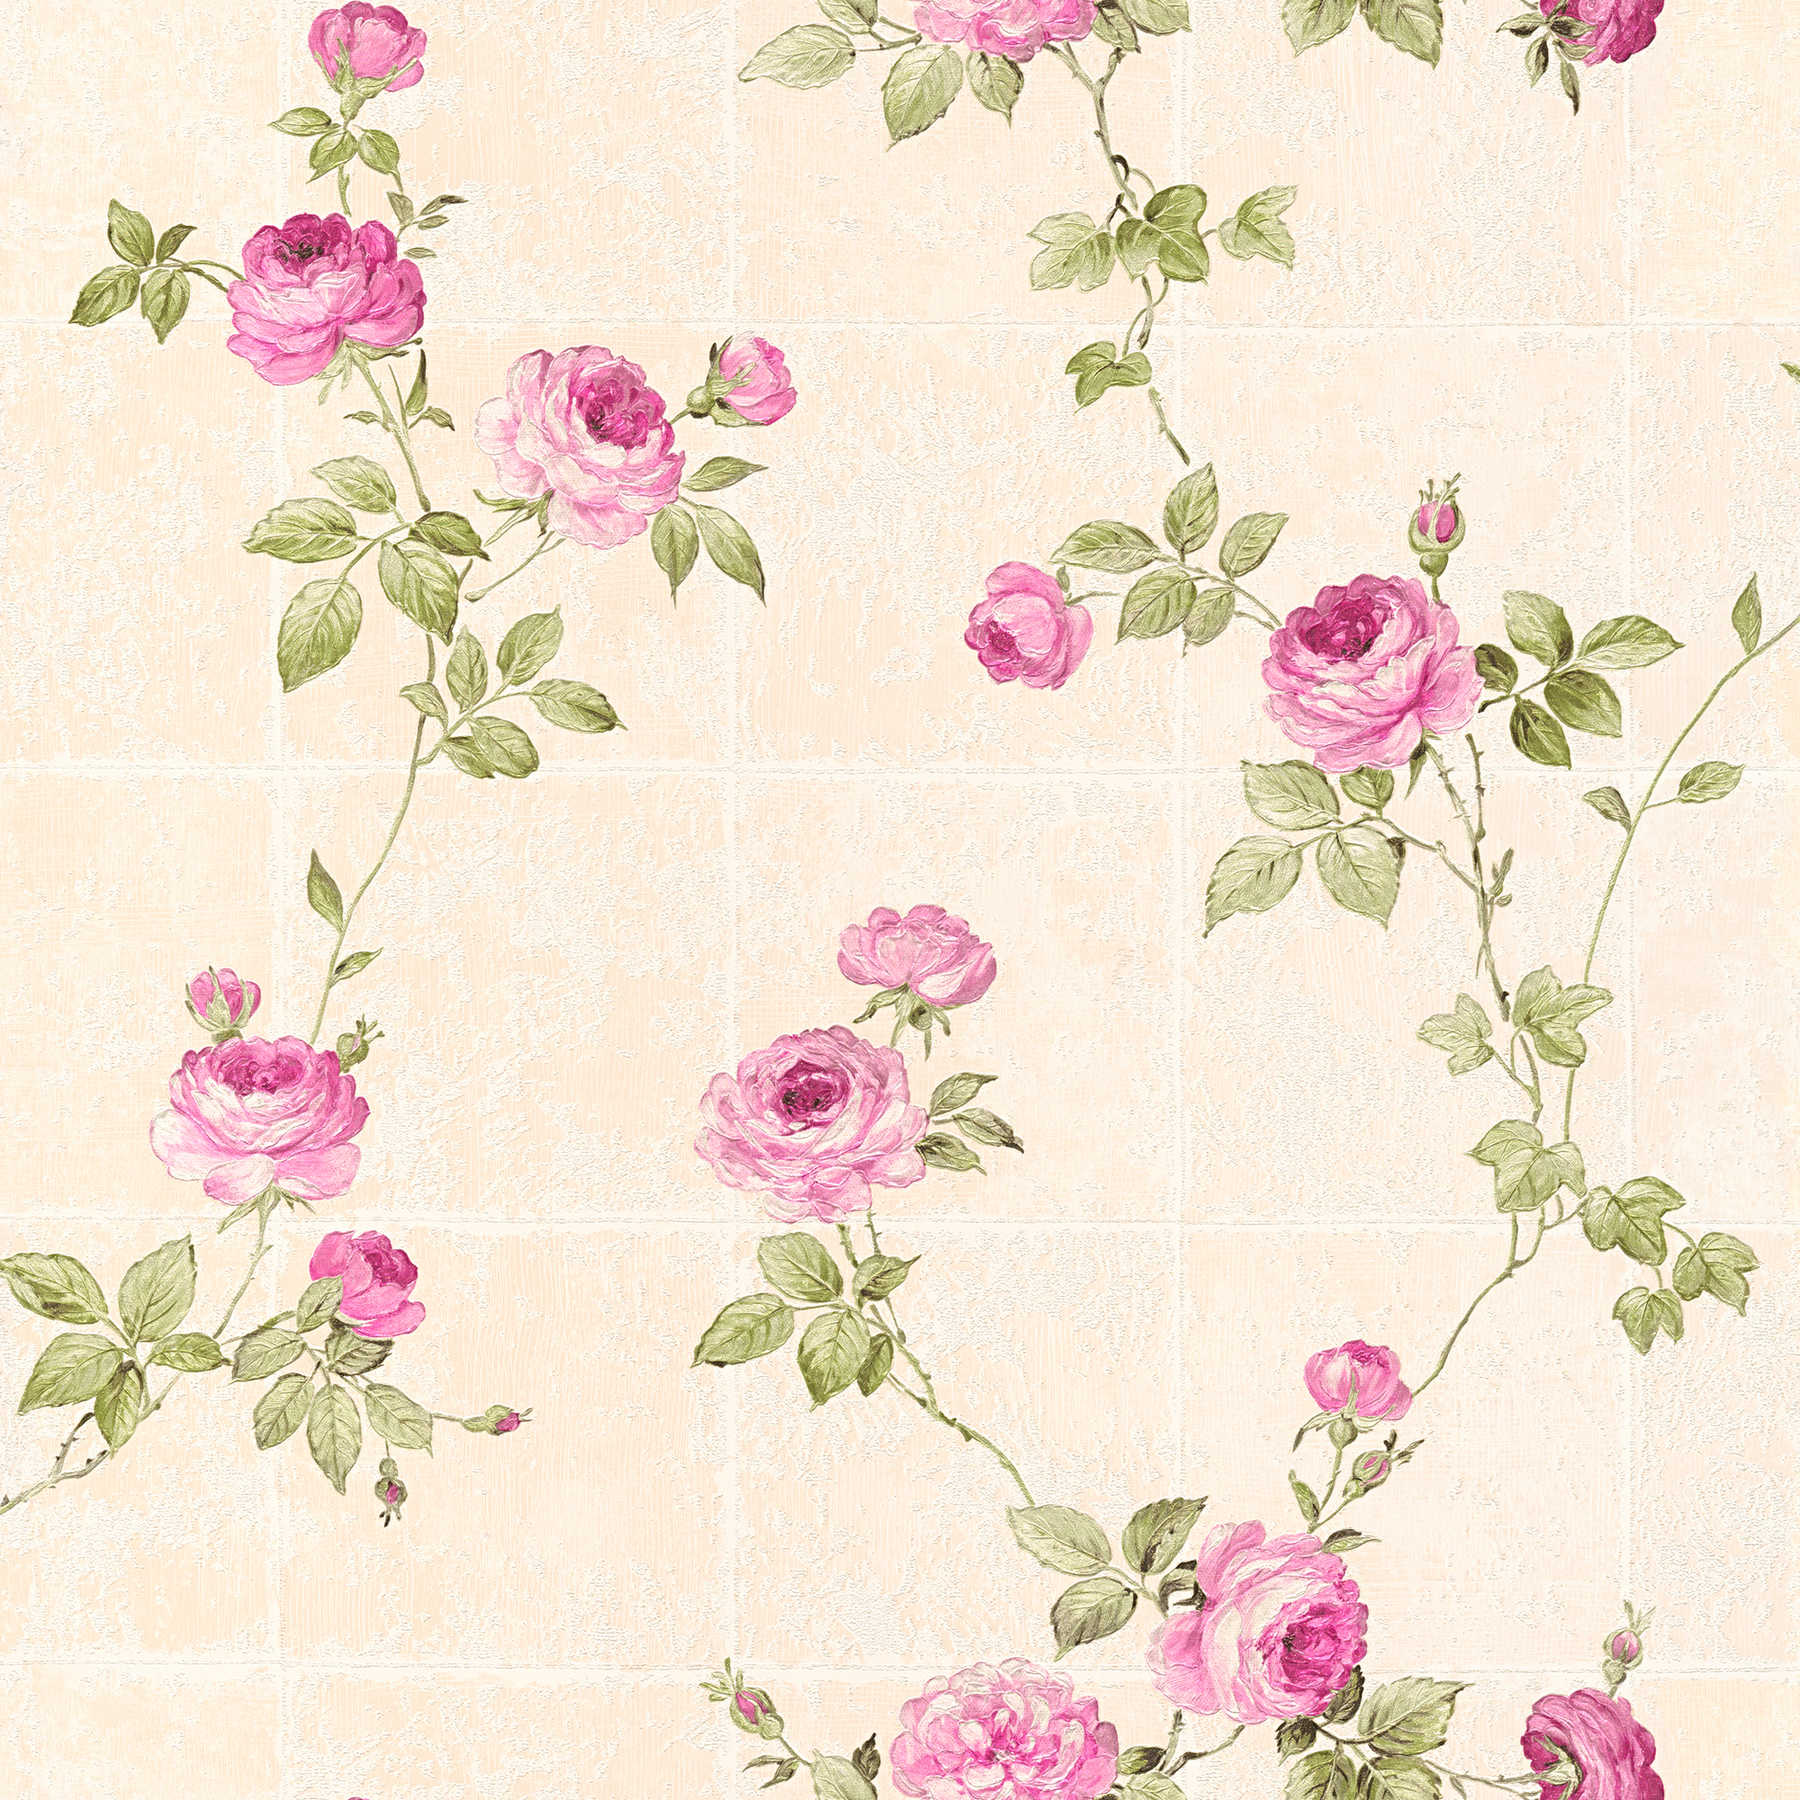         Tegelachtig behang met rozenranken - beige, groen, roze
    